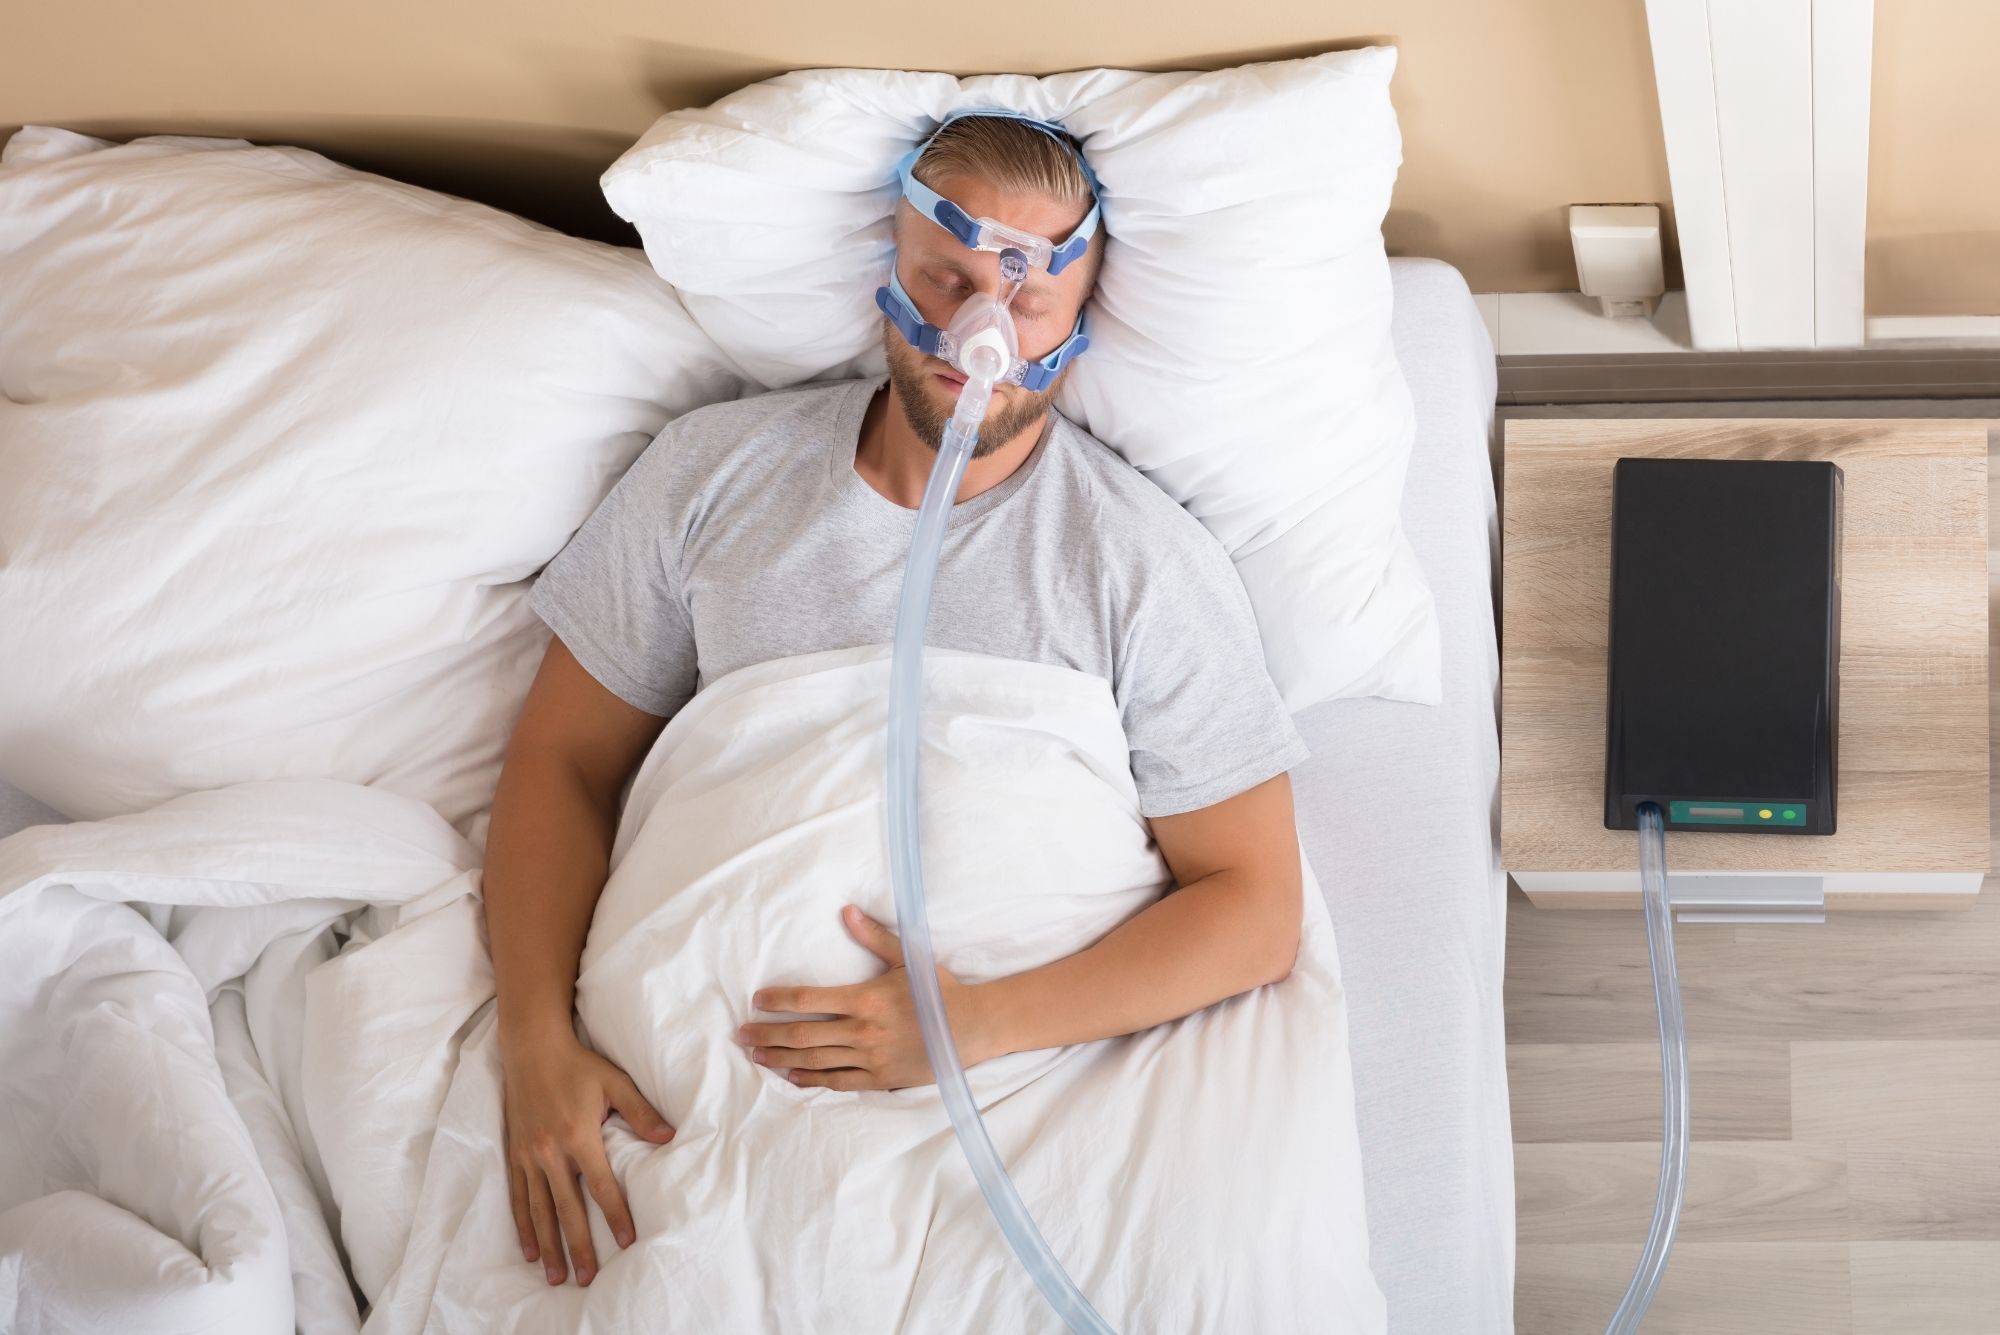 can a mattress help sleep apnea